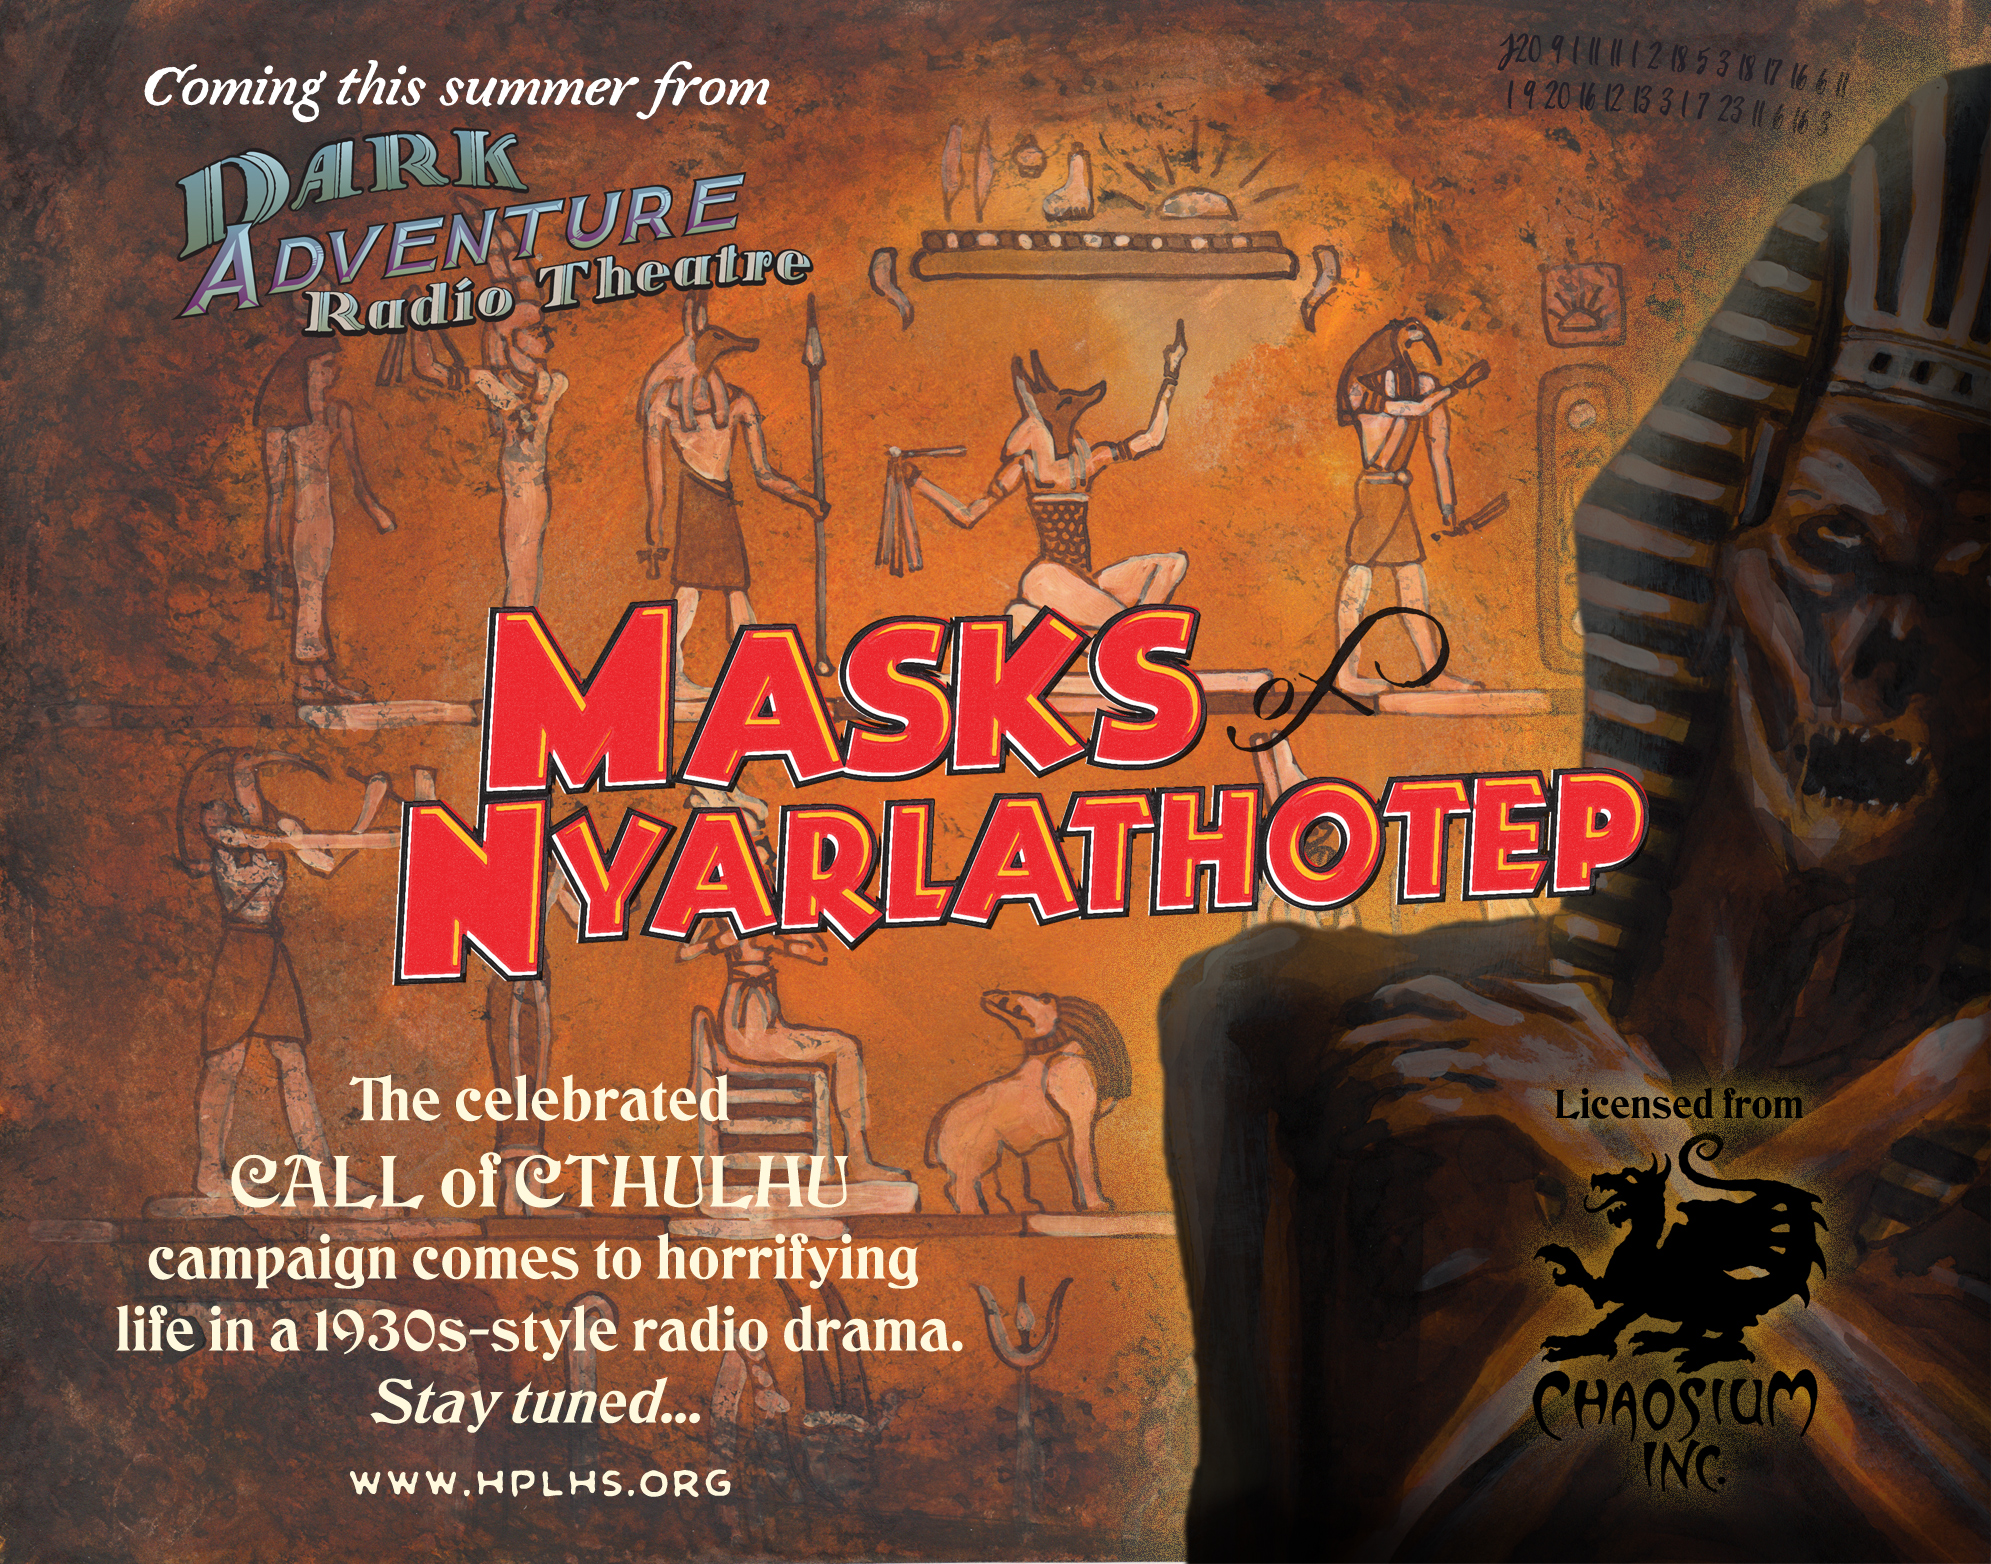 Masks of Nyarlathotep